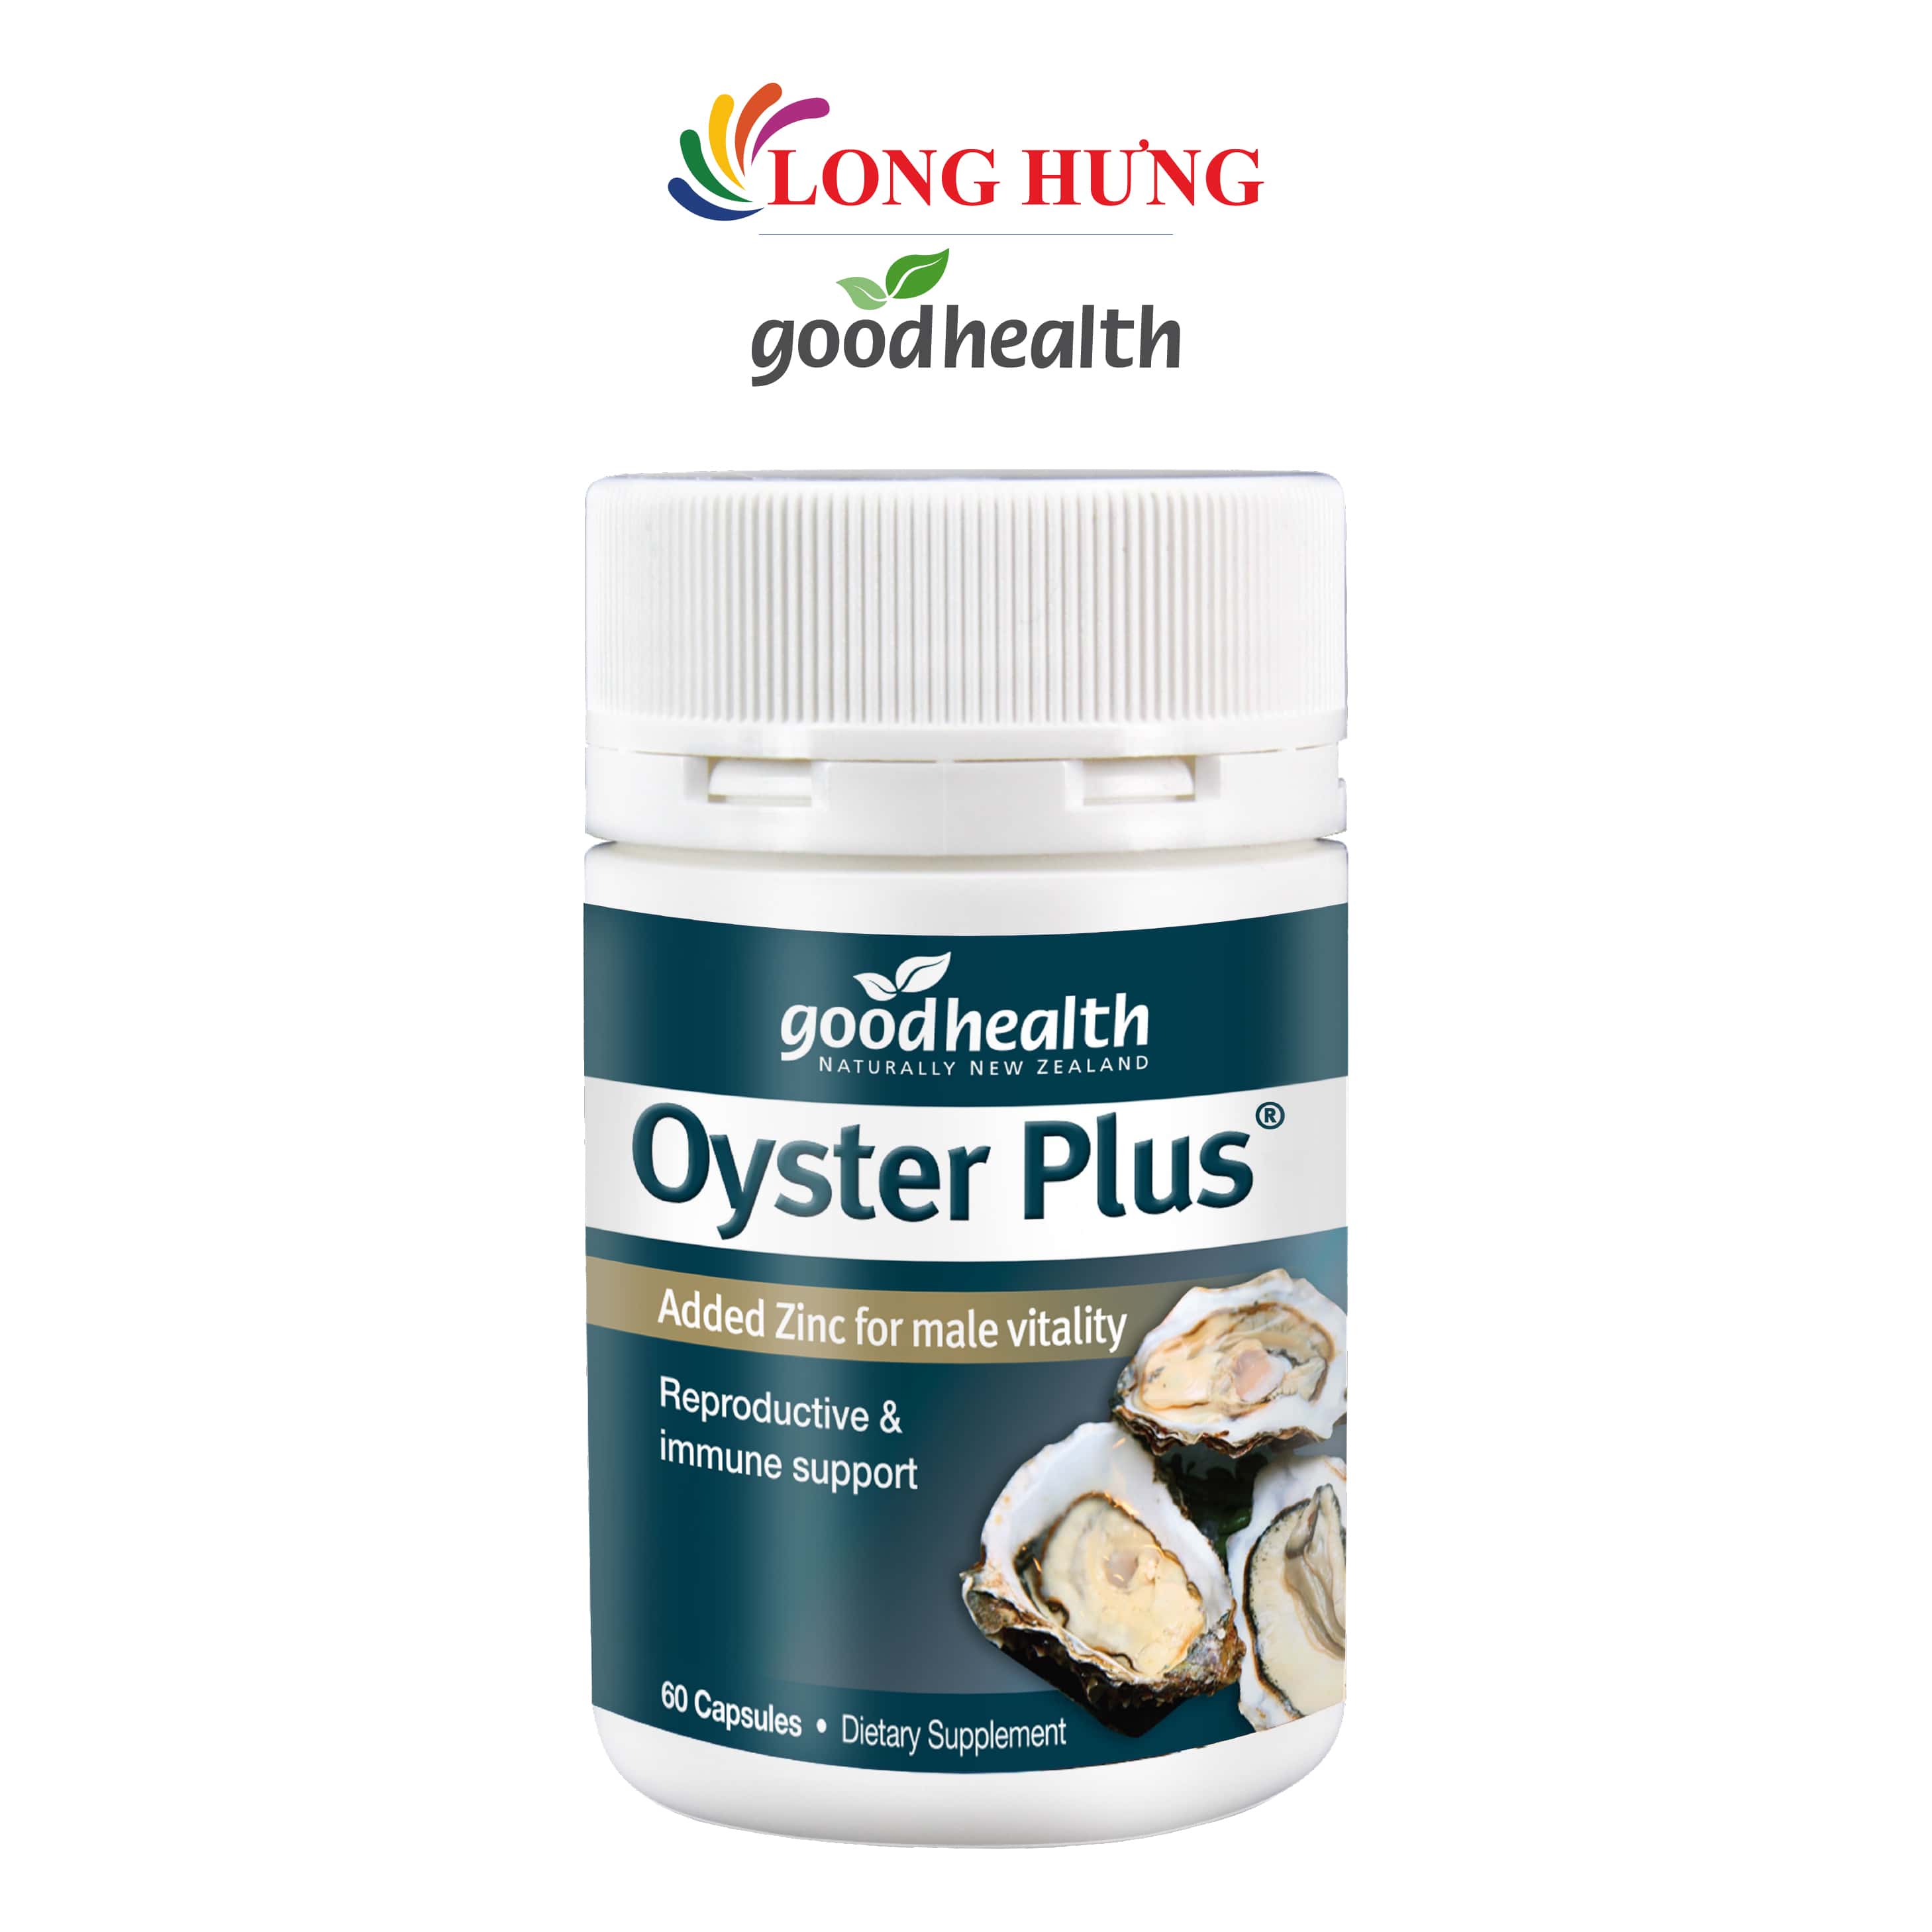 Viên uống GoodHealth Oyster Plus tinh chất hàu hỗ trợ sinh lý nam